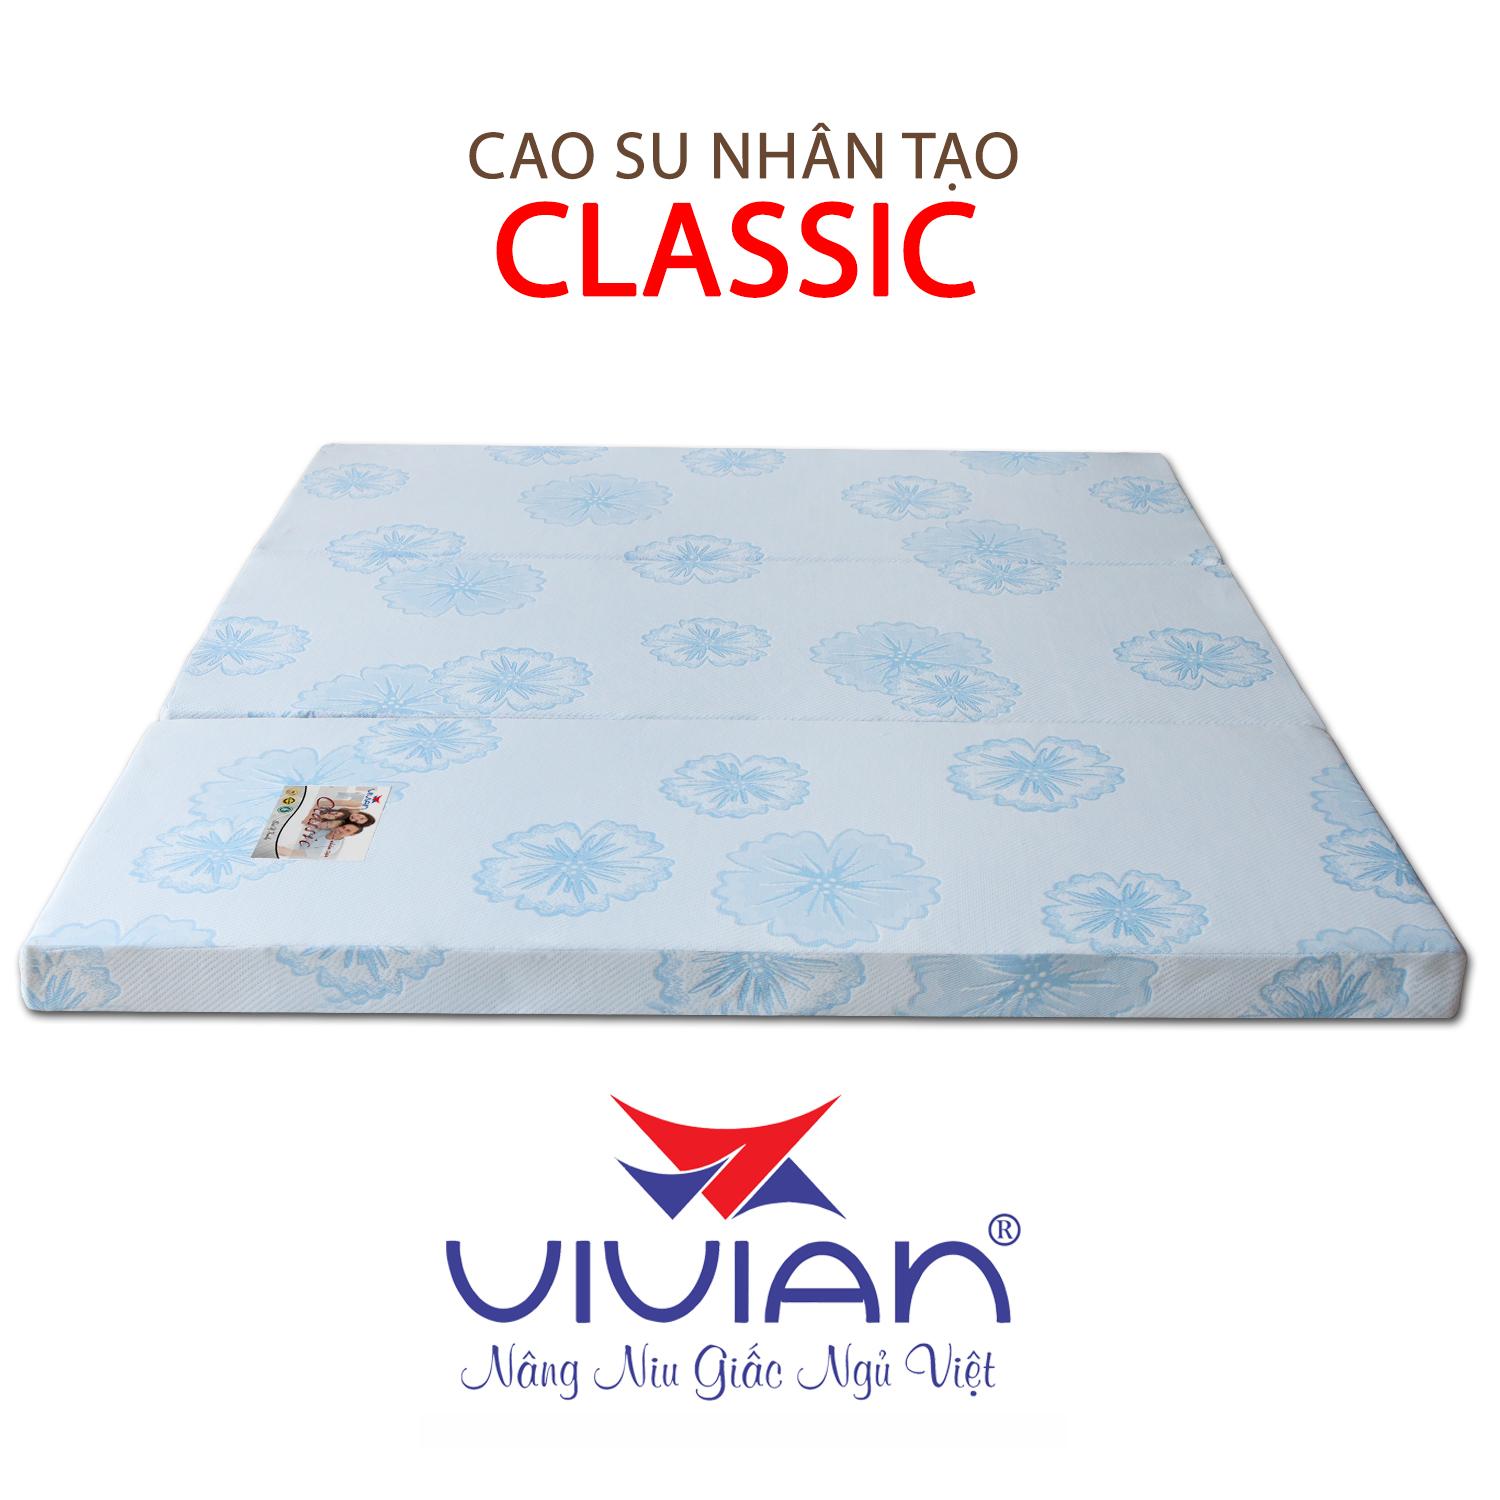 Nệm Cao Su Nhân Tạo Gấp 3 Classic VIVIAN (1.2 x 2.0 m) Nền Trắng Hoa Văn Màu Sắc Ngẫu Nhiên